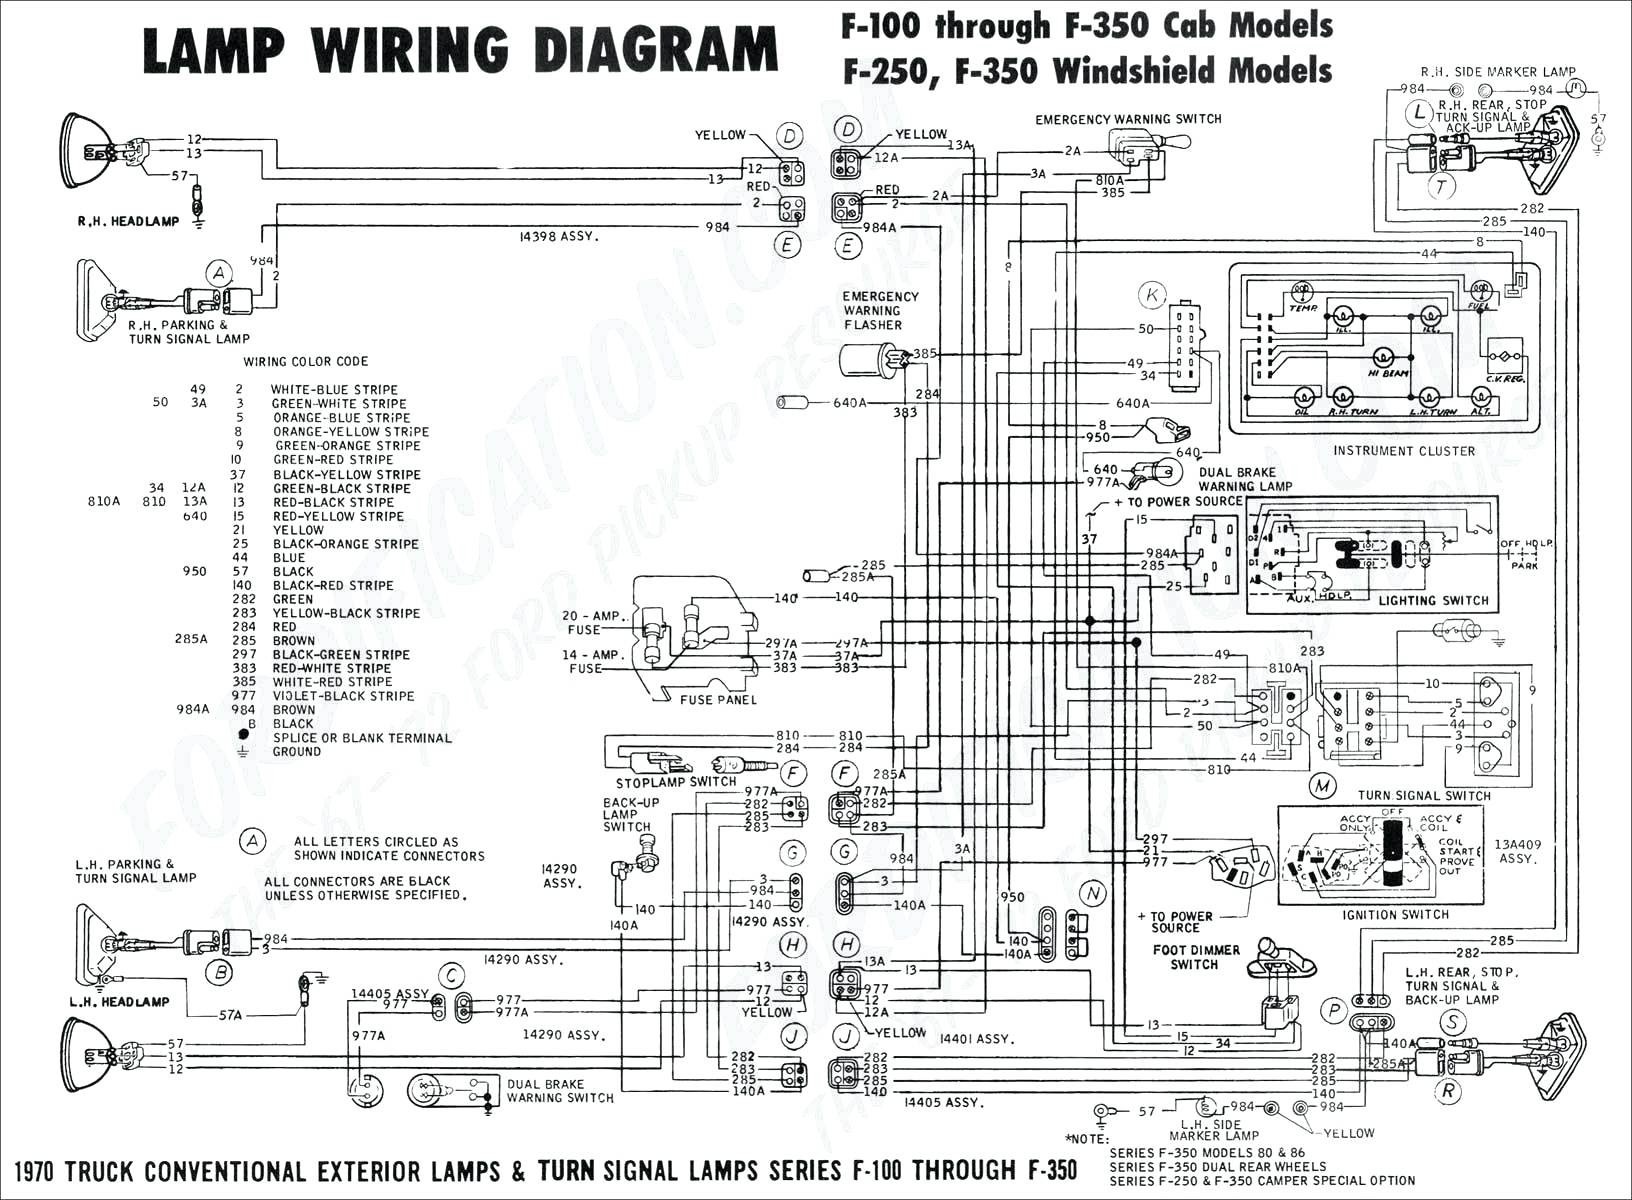 1999 ford Ranger Engine Diagram 2000 ford Ranger Headlight Wiring Diagram Wiring Diagram Of 1999 ford Ranger Engine Diagram